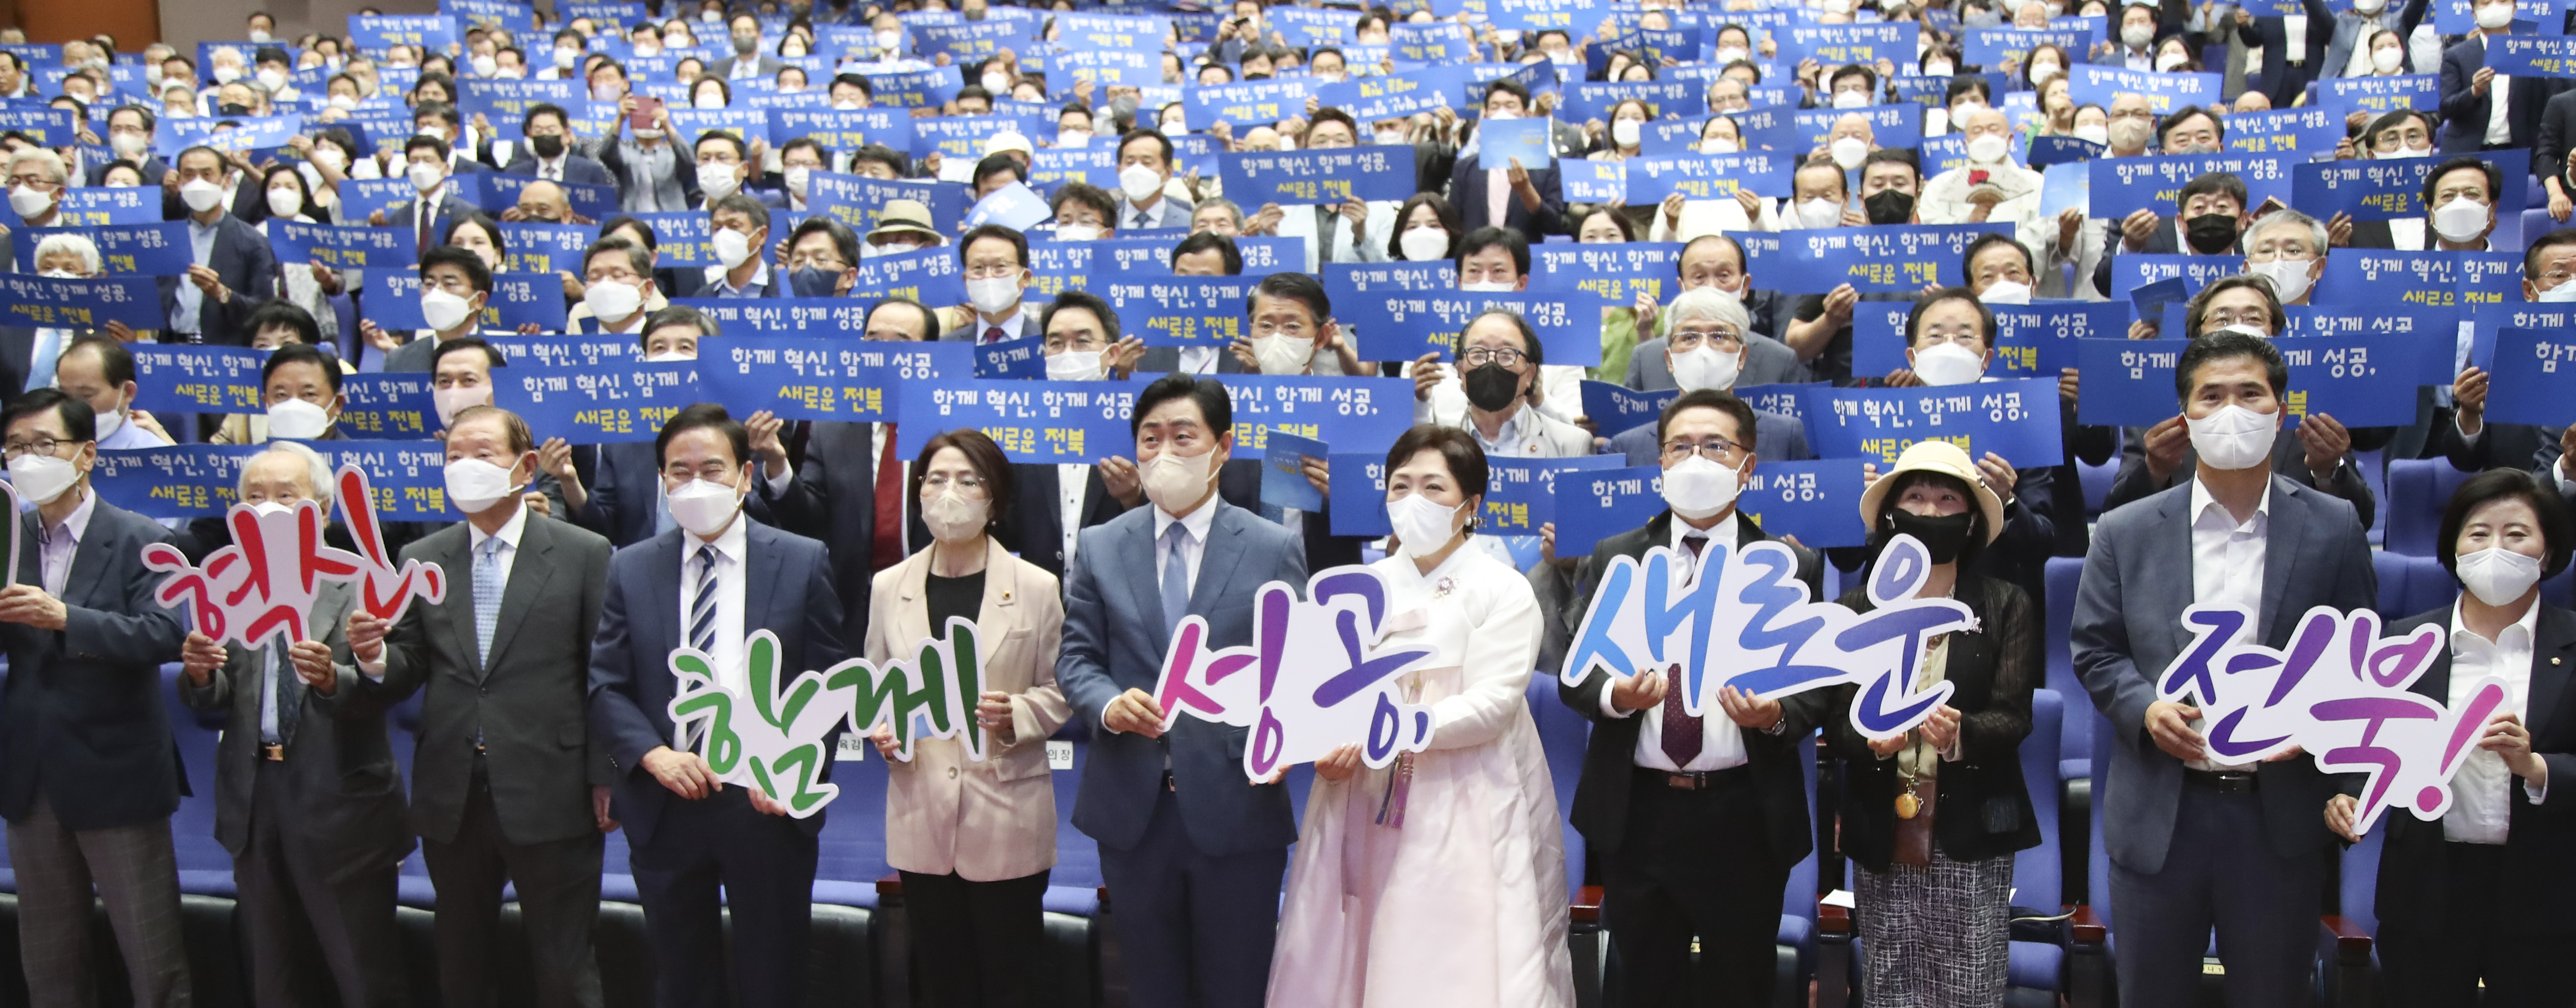 Lễ nhậm chức của Tỉnh trưởng tỉnh Jeollabuk lần thứ 36 – Kim Kwan Young image(1)